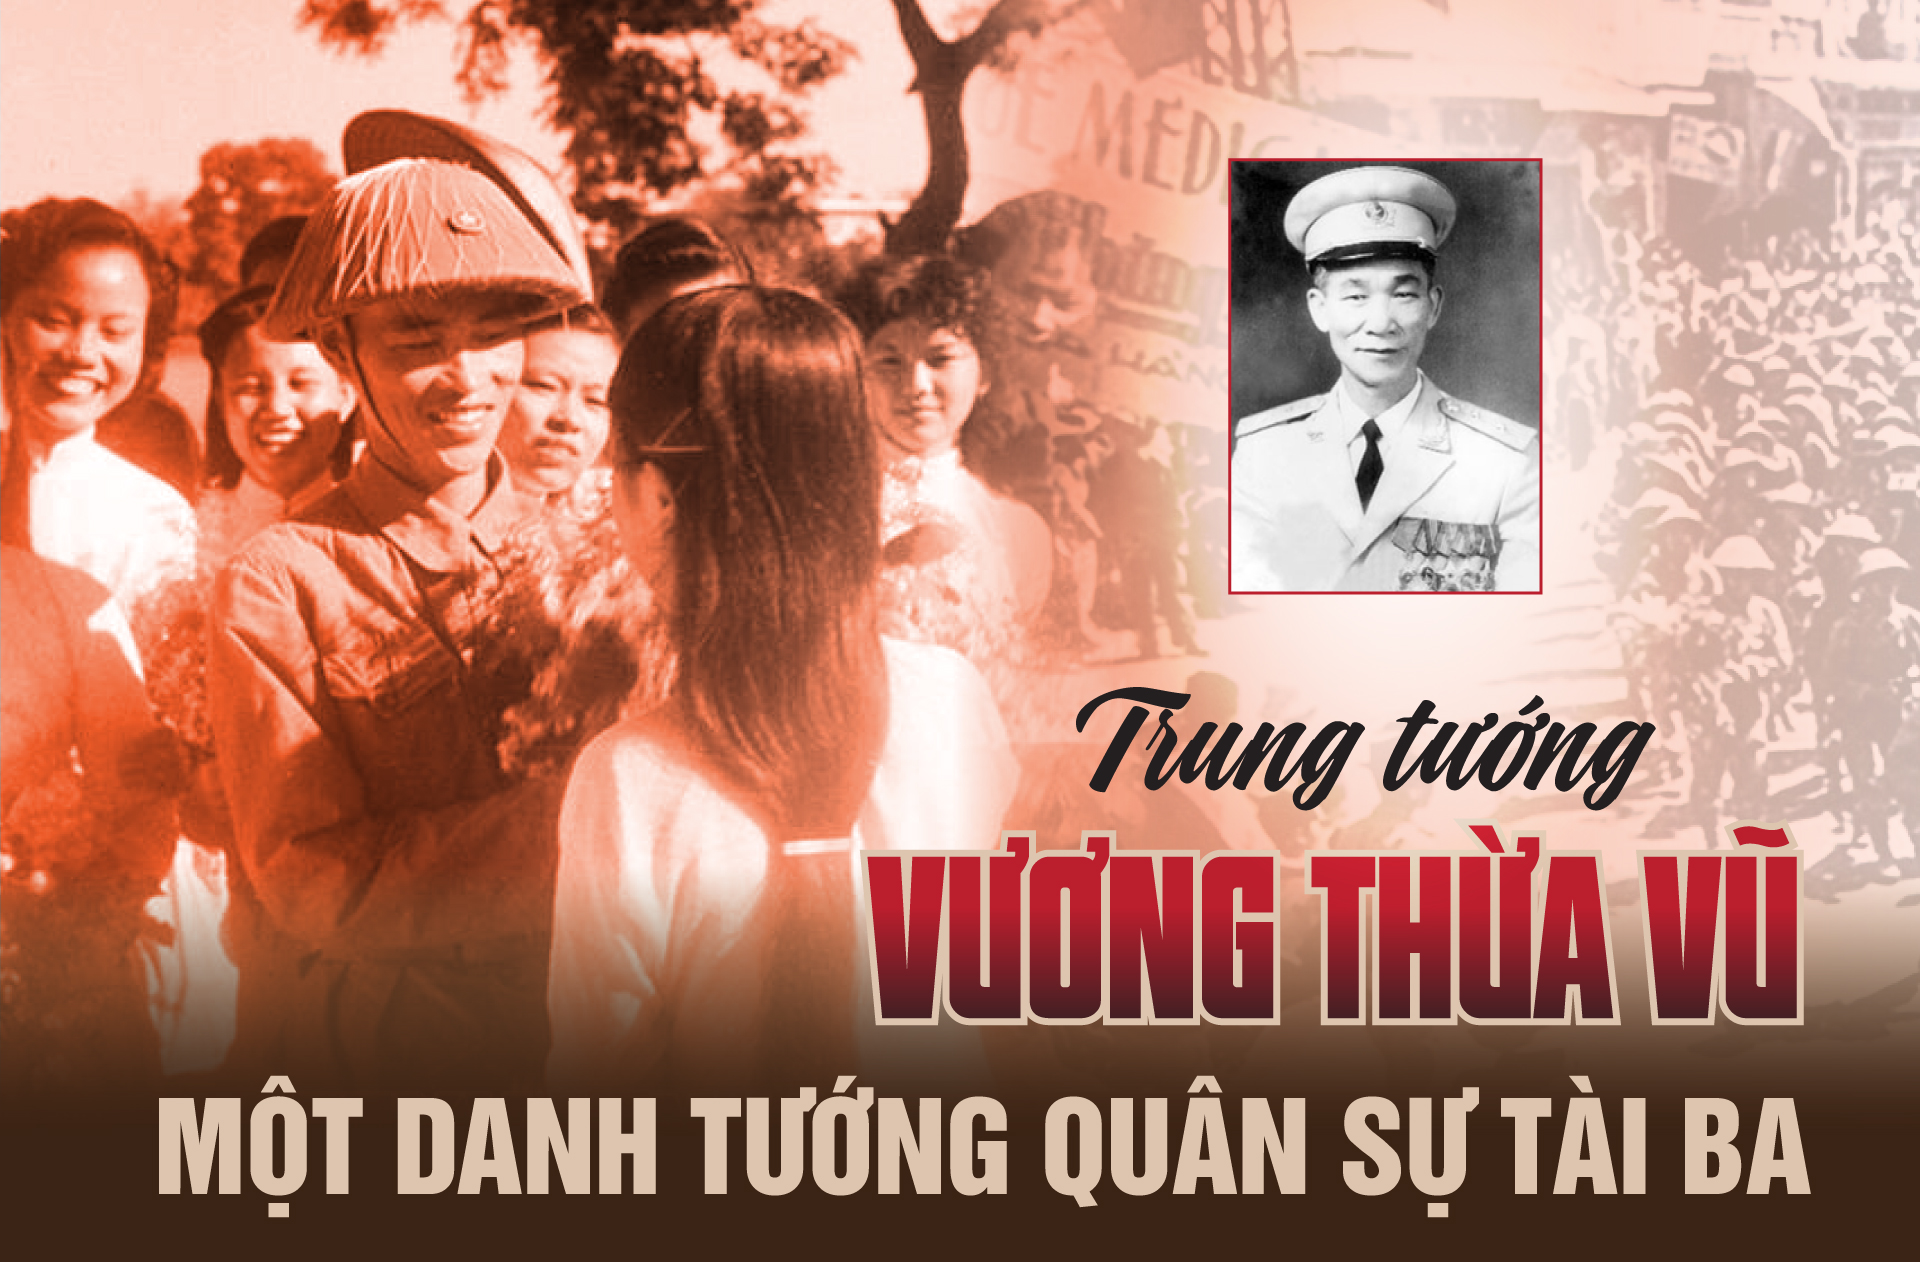 Trung tướng Vương Thừa Vũ: Một danh tướng quân sự tài ba